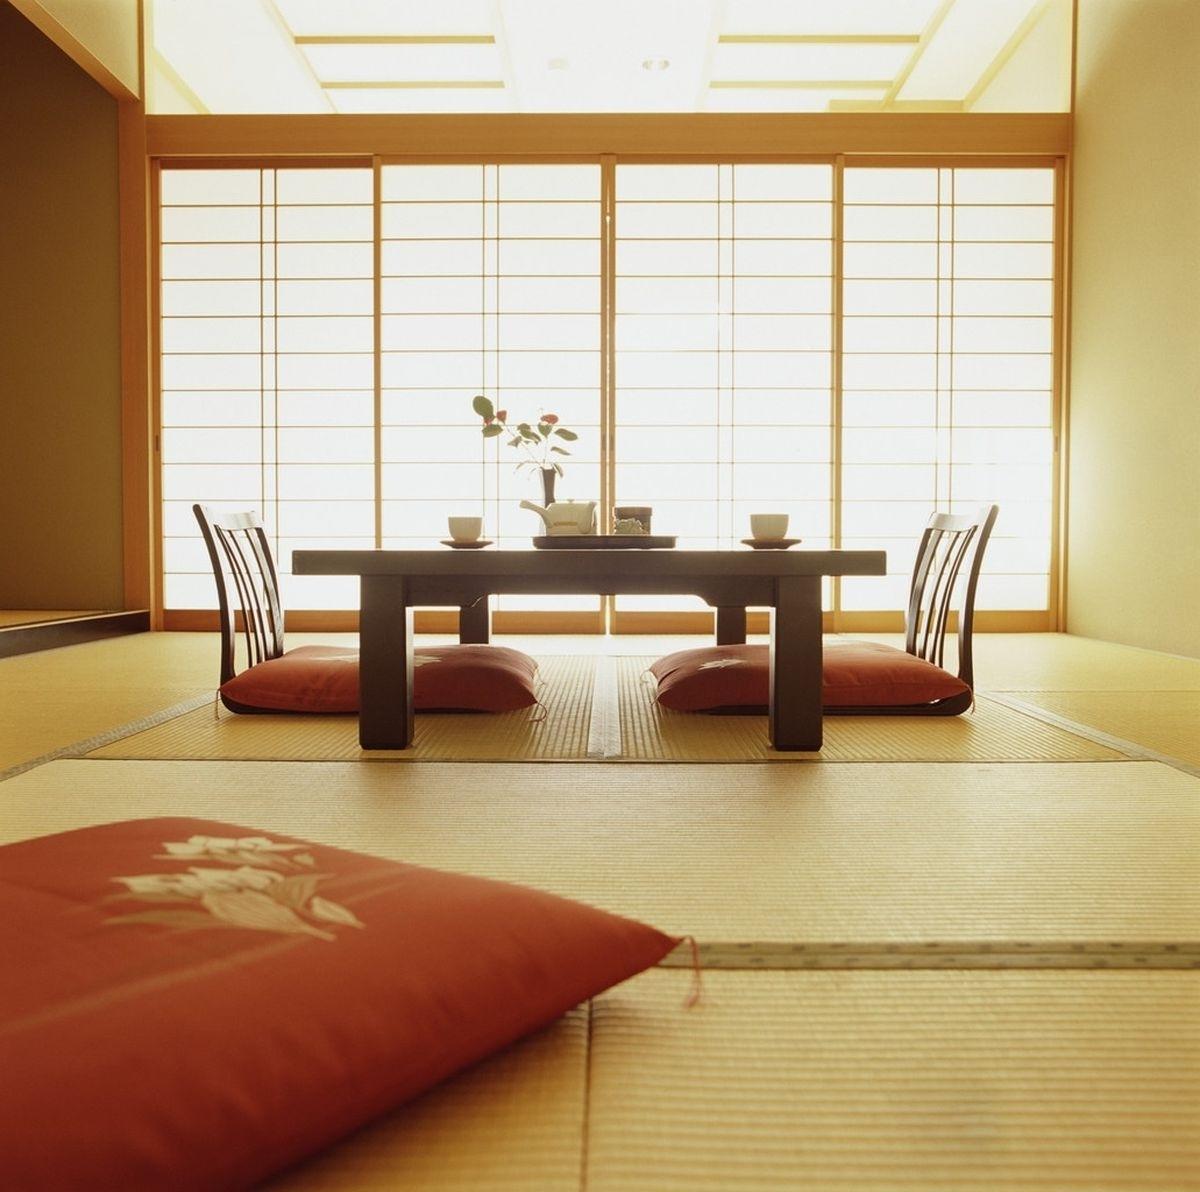 Zen: Phong thủy Zen lại là xu hướng phổ biến trong thiết kế nội thất và sống đơn giản. Lối sống Zen giúp con người đạt được sự cân bằng tinh thần, tạo ra môi trường sống bình an, tĩnh lặng. Hình ảnh liên quan đến Zen đem lại sự tĩnh lặng và động lực để bạn tiếp tục duy trì lối sống đơn giản và yên bình.